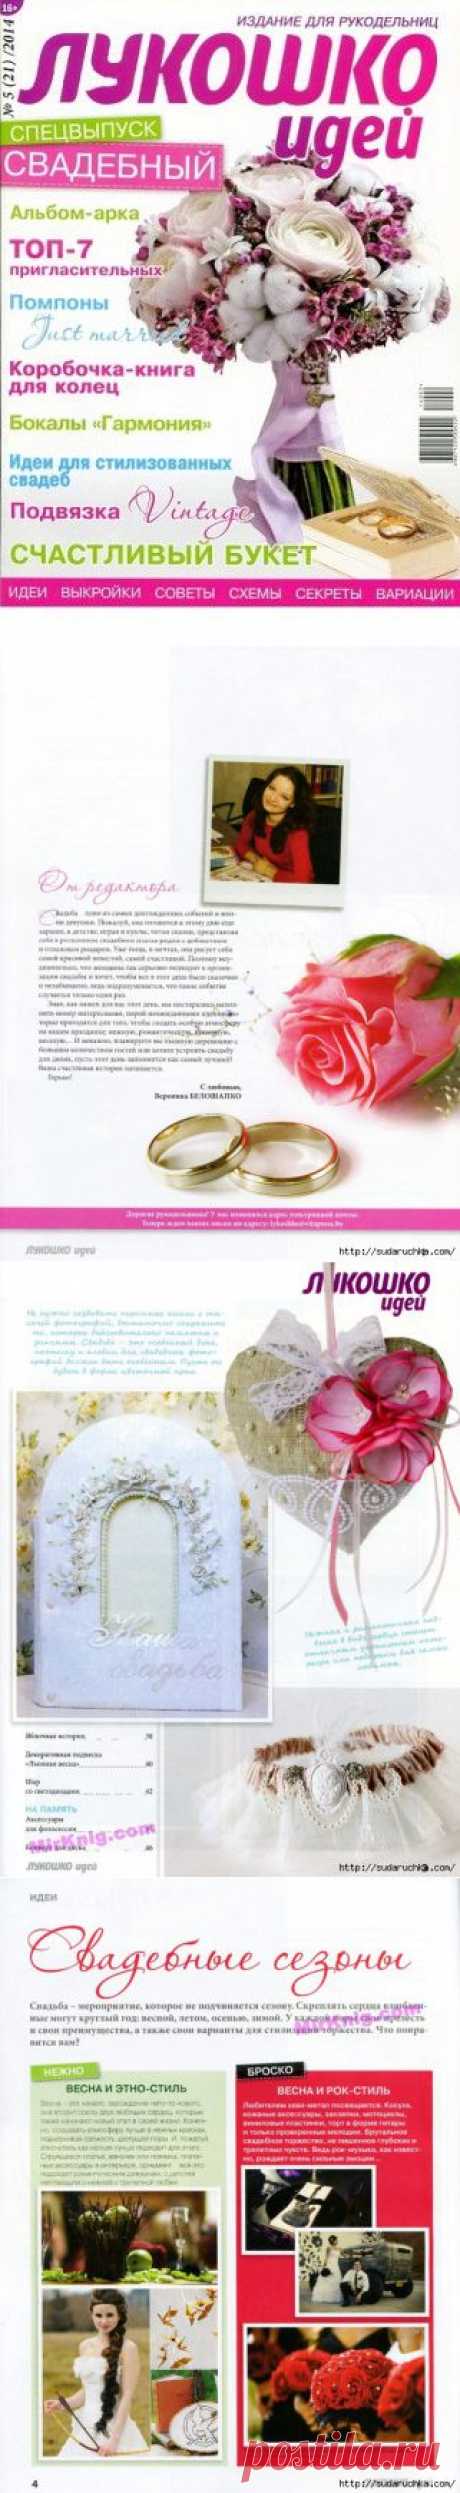 &quot;Лукошко идей - свадебный спецвыпуск&quot;.Журнал по рукоделию..